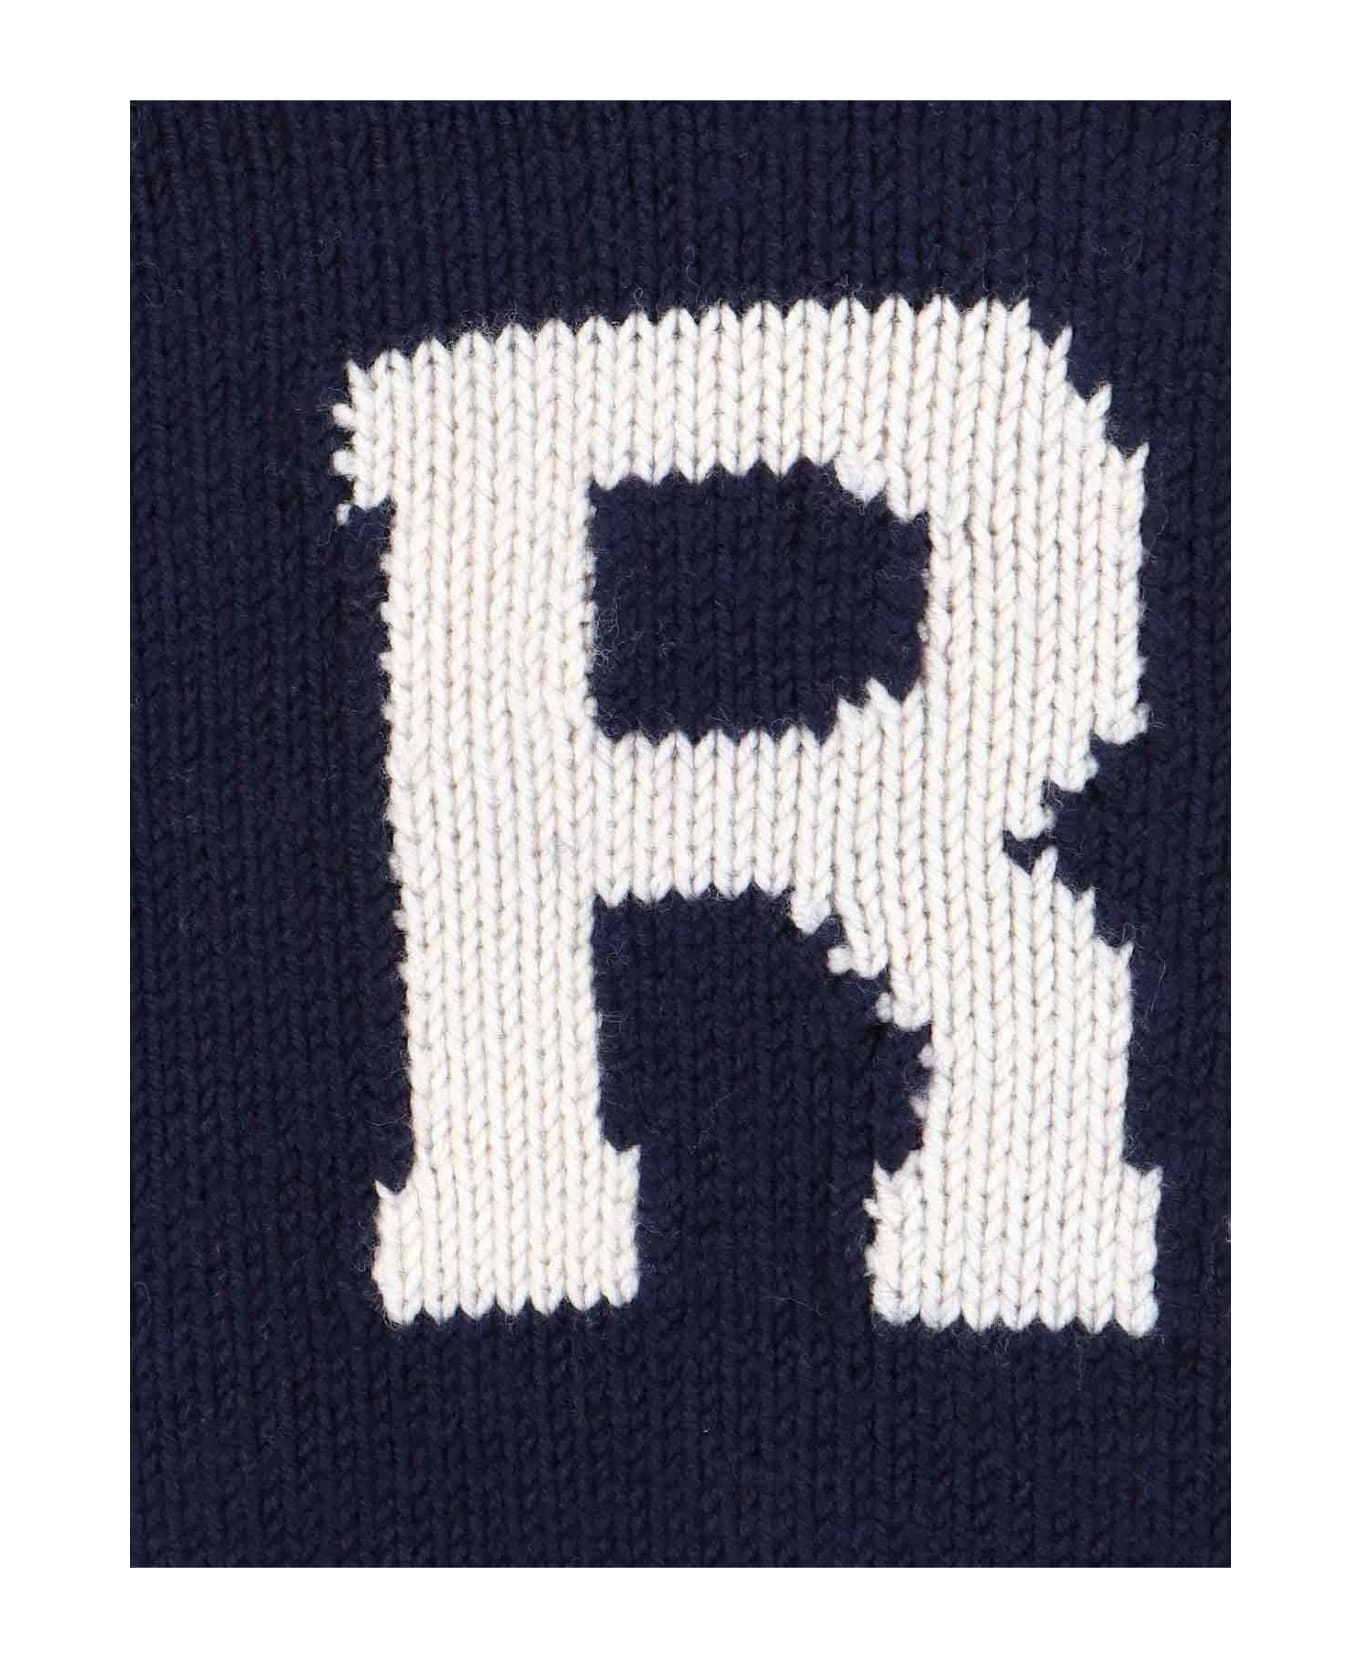 Ralph Lauren Logo Sweater - BLUE ニットウェア